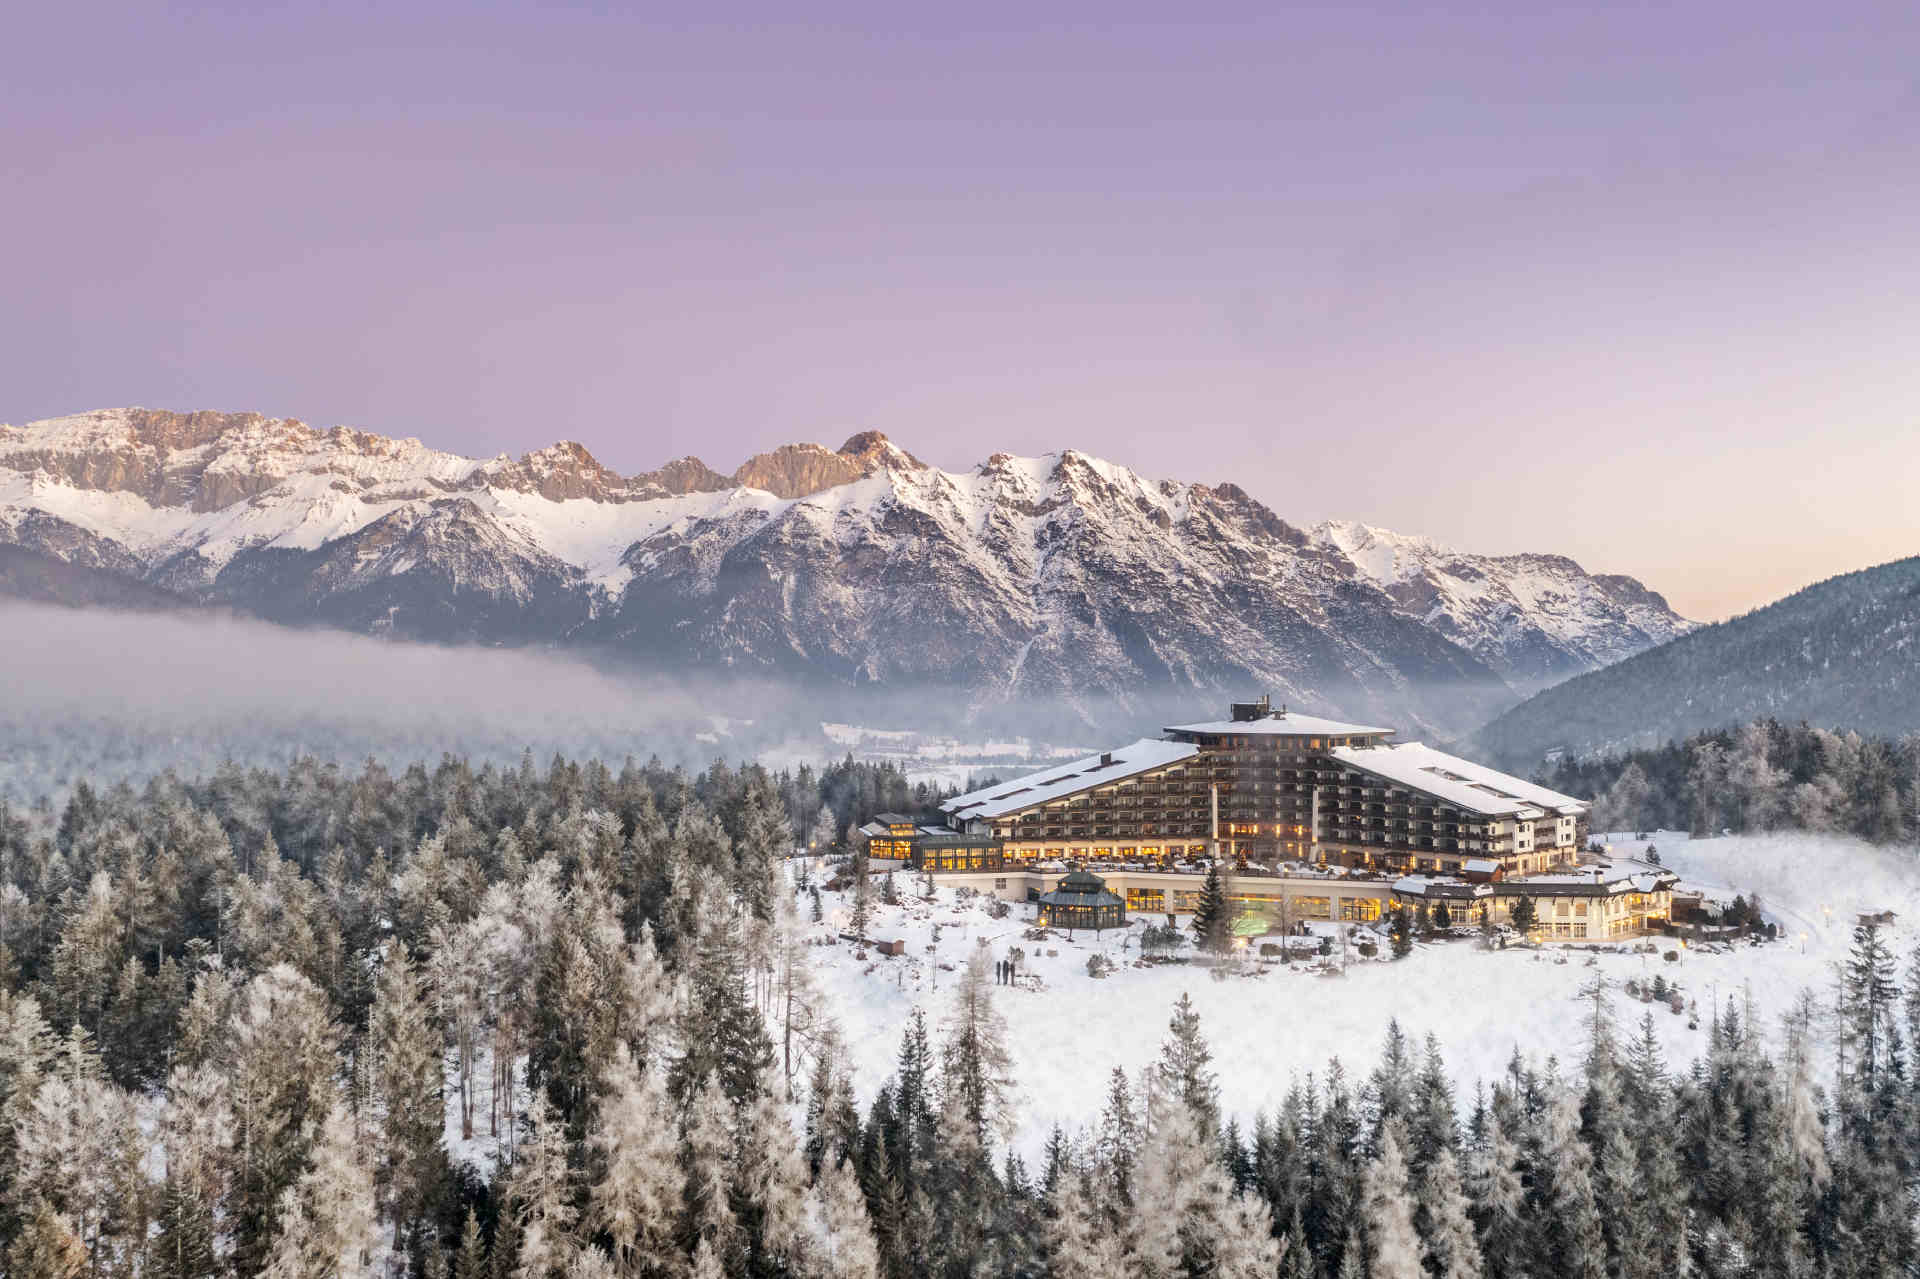 Das »Interalpen Hotel Tyrol« ist in eine Winterlandschaft eingebettet. © Interalpen Hotel Tyrol